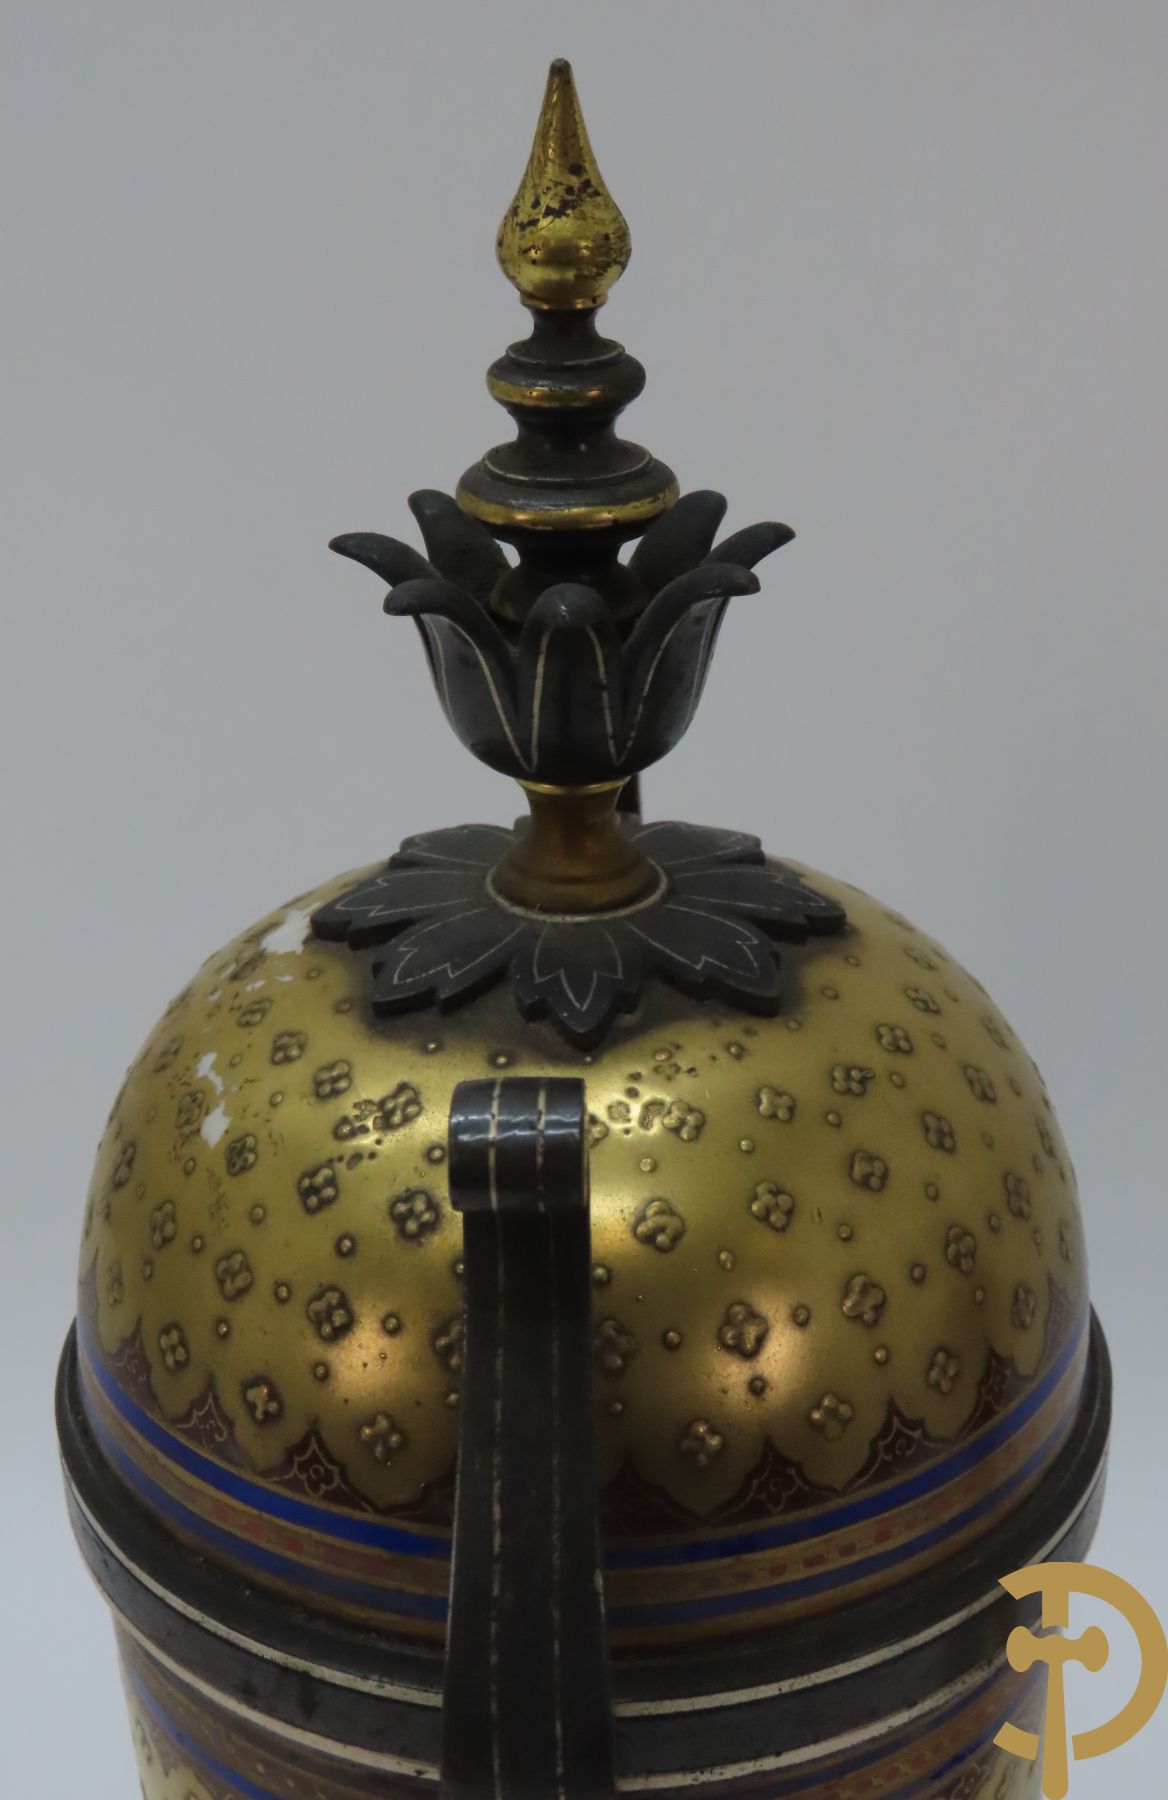 Paar vergulde metalen vazen met Middeleeuws decor van ridder, Malpass L. getekend onderaan